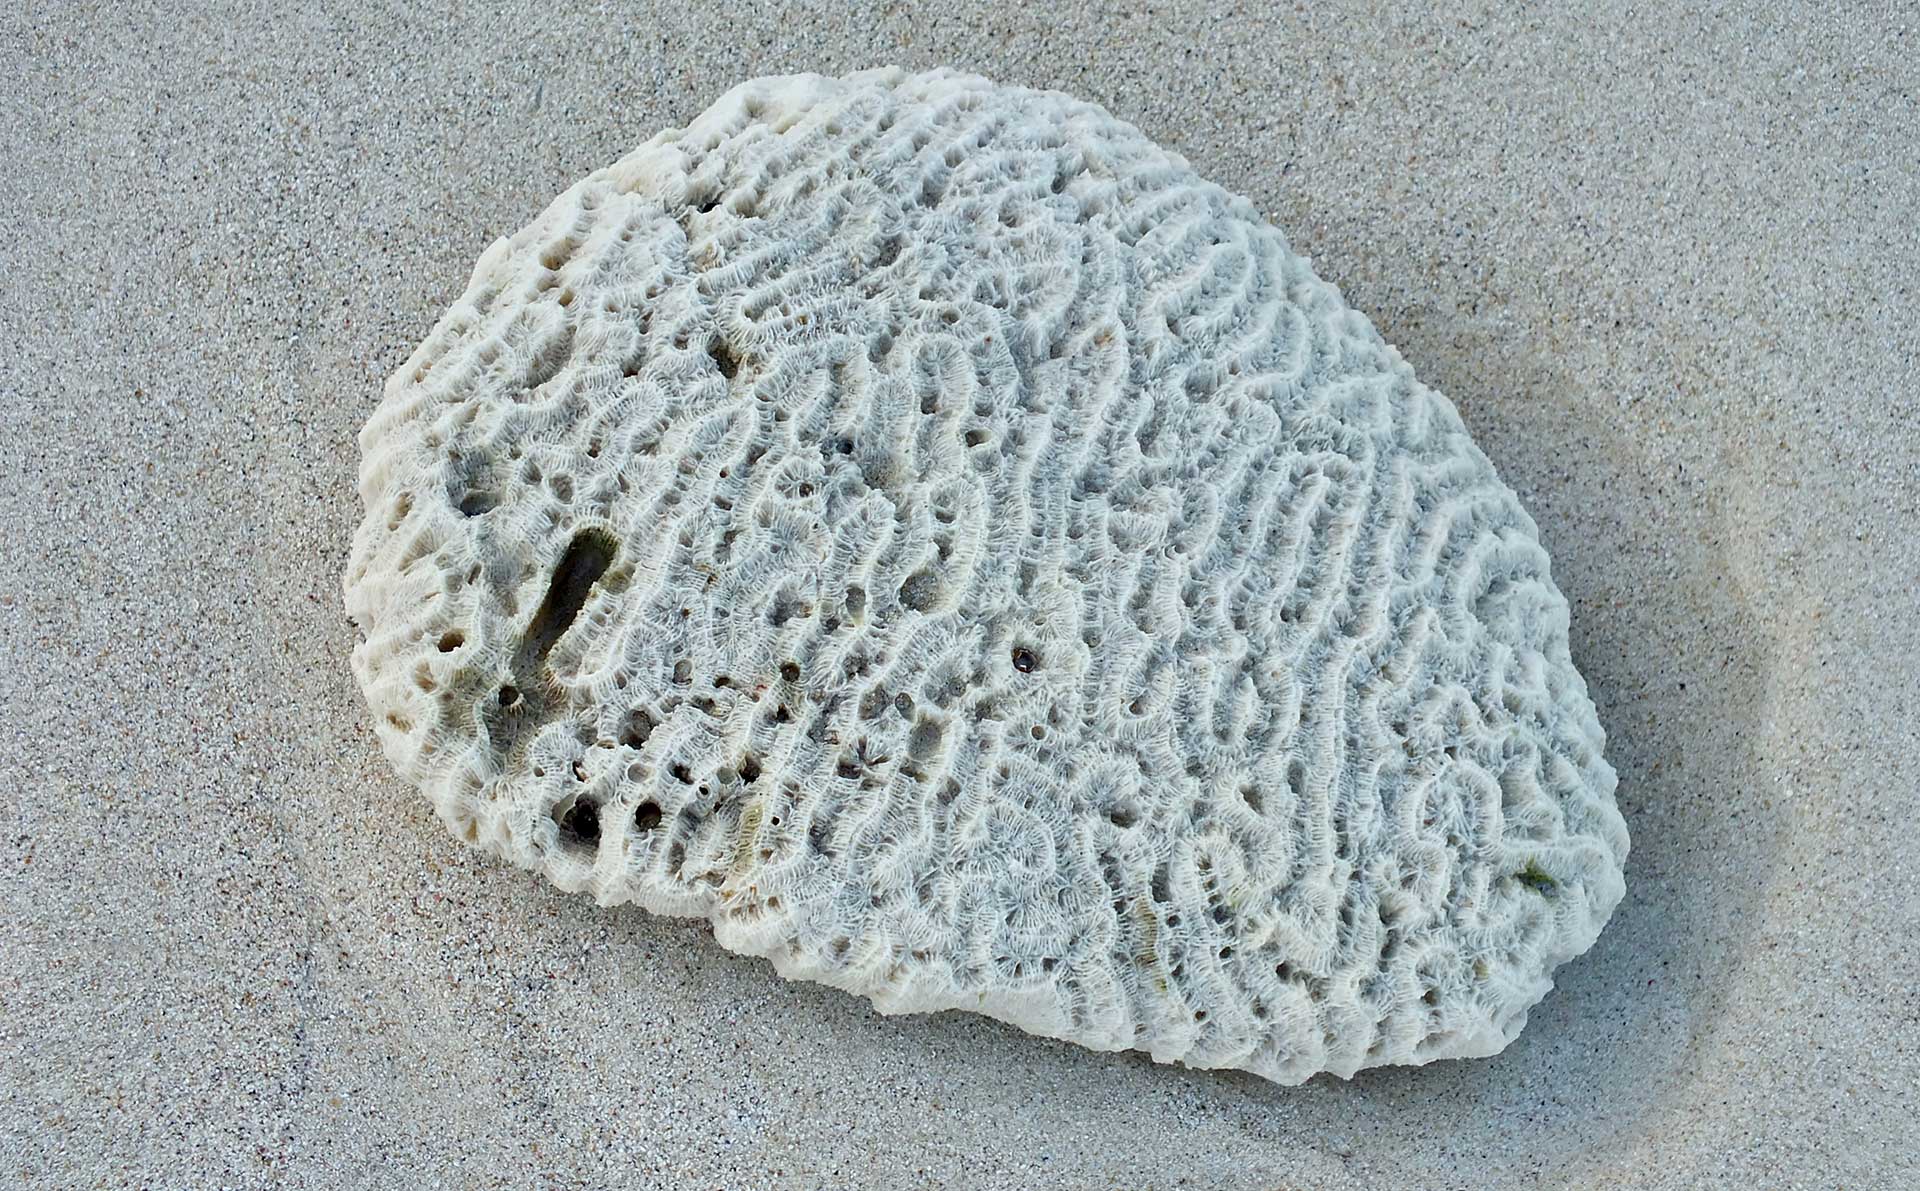 Florida's Dead Brain Coral